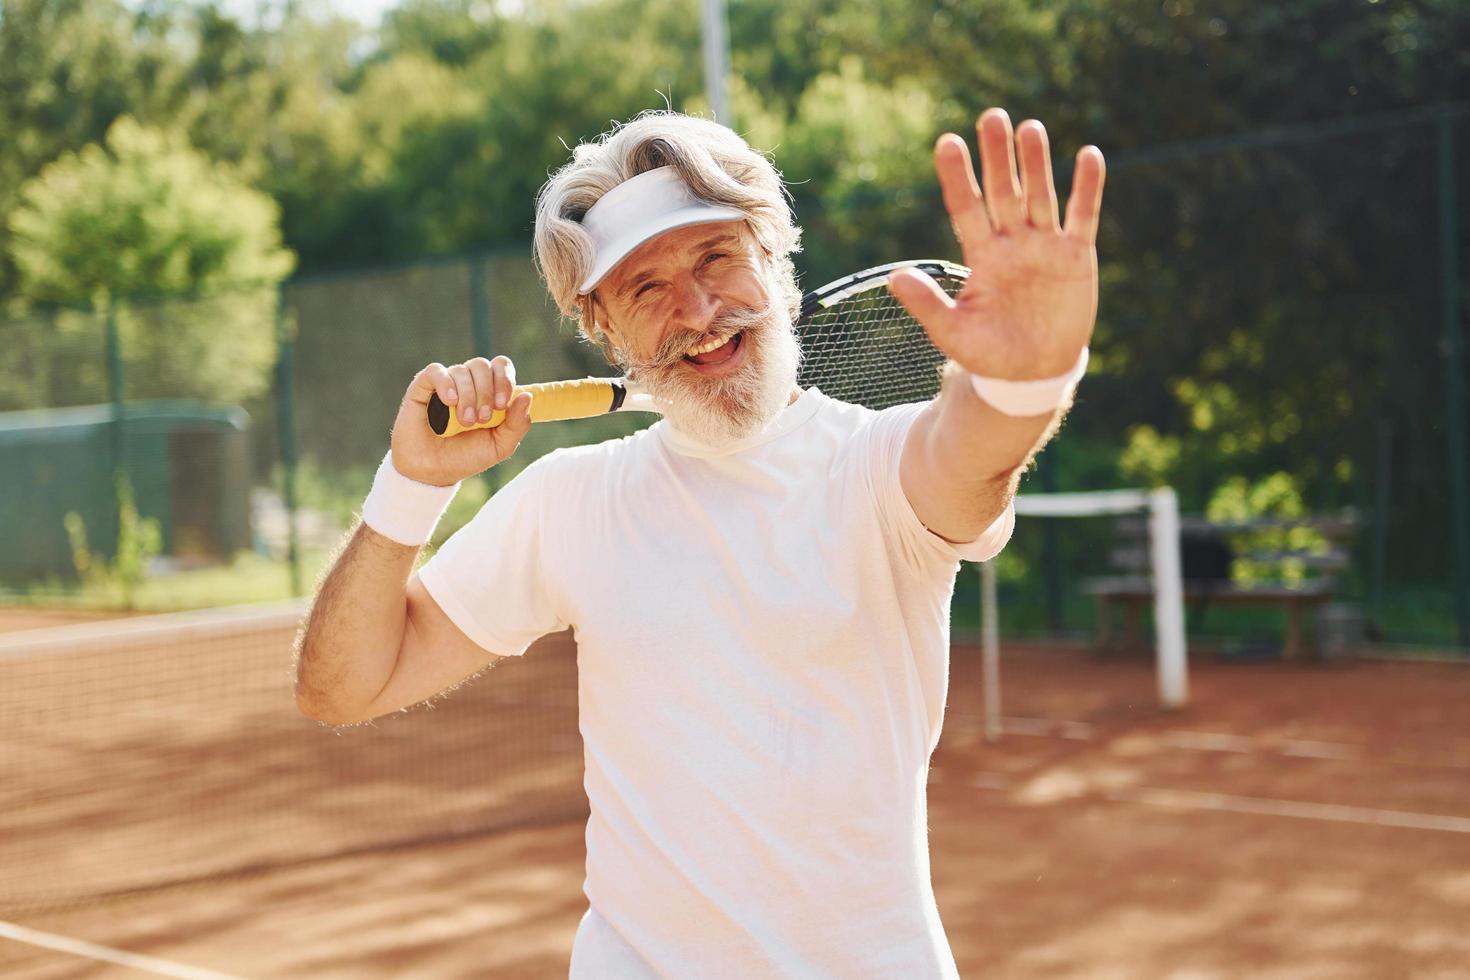 homem elegante moderno sênior com raquete ao ar livre na quadra de tênis durante o dia foto